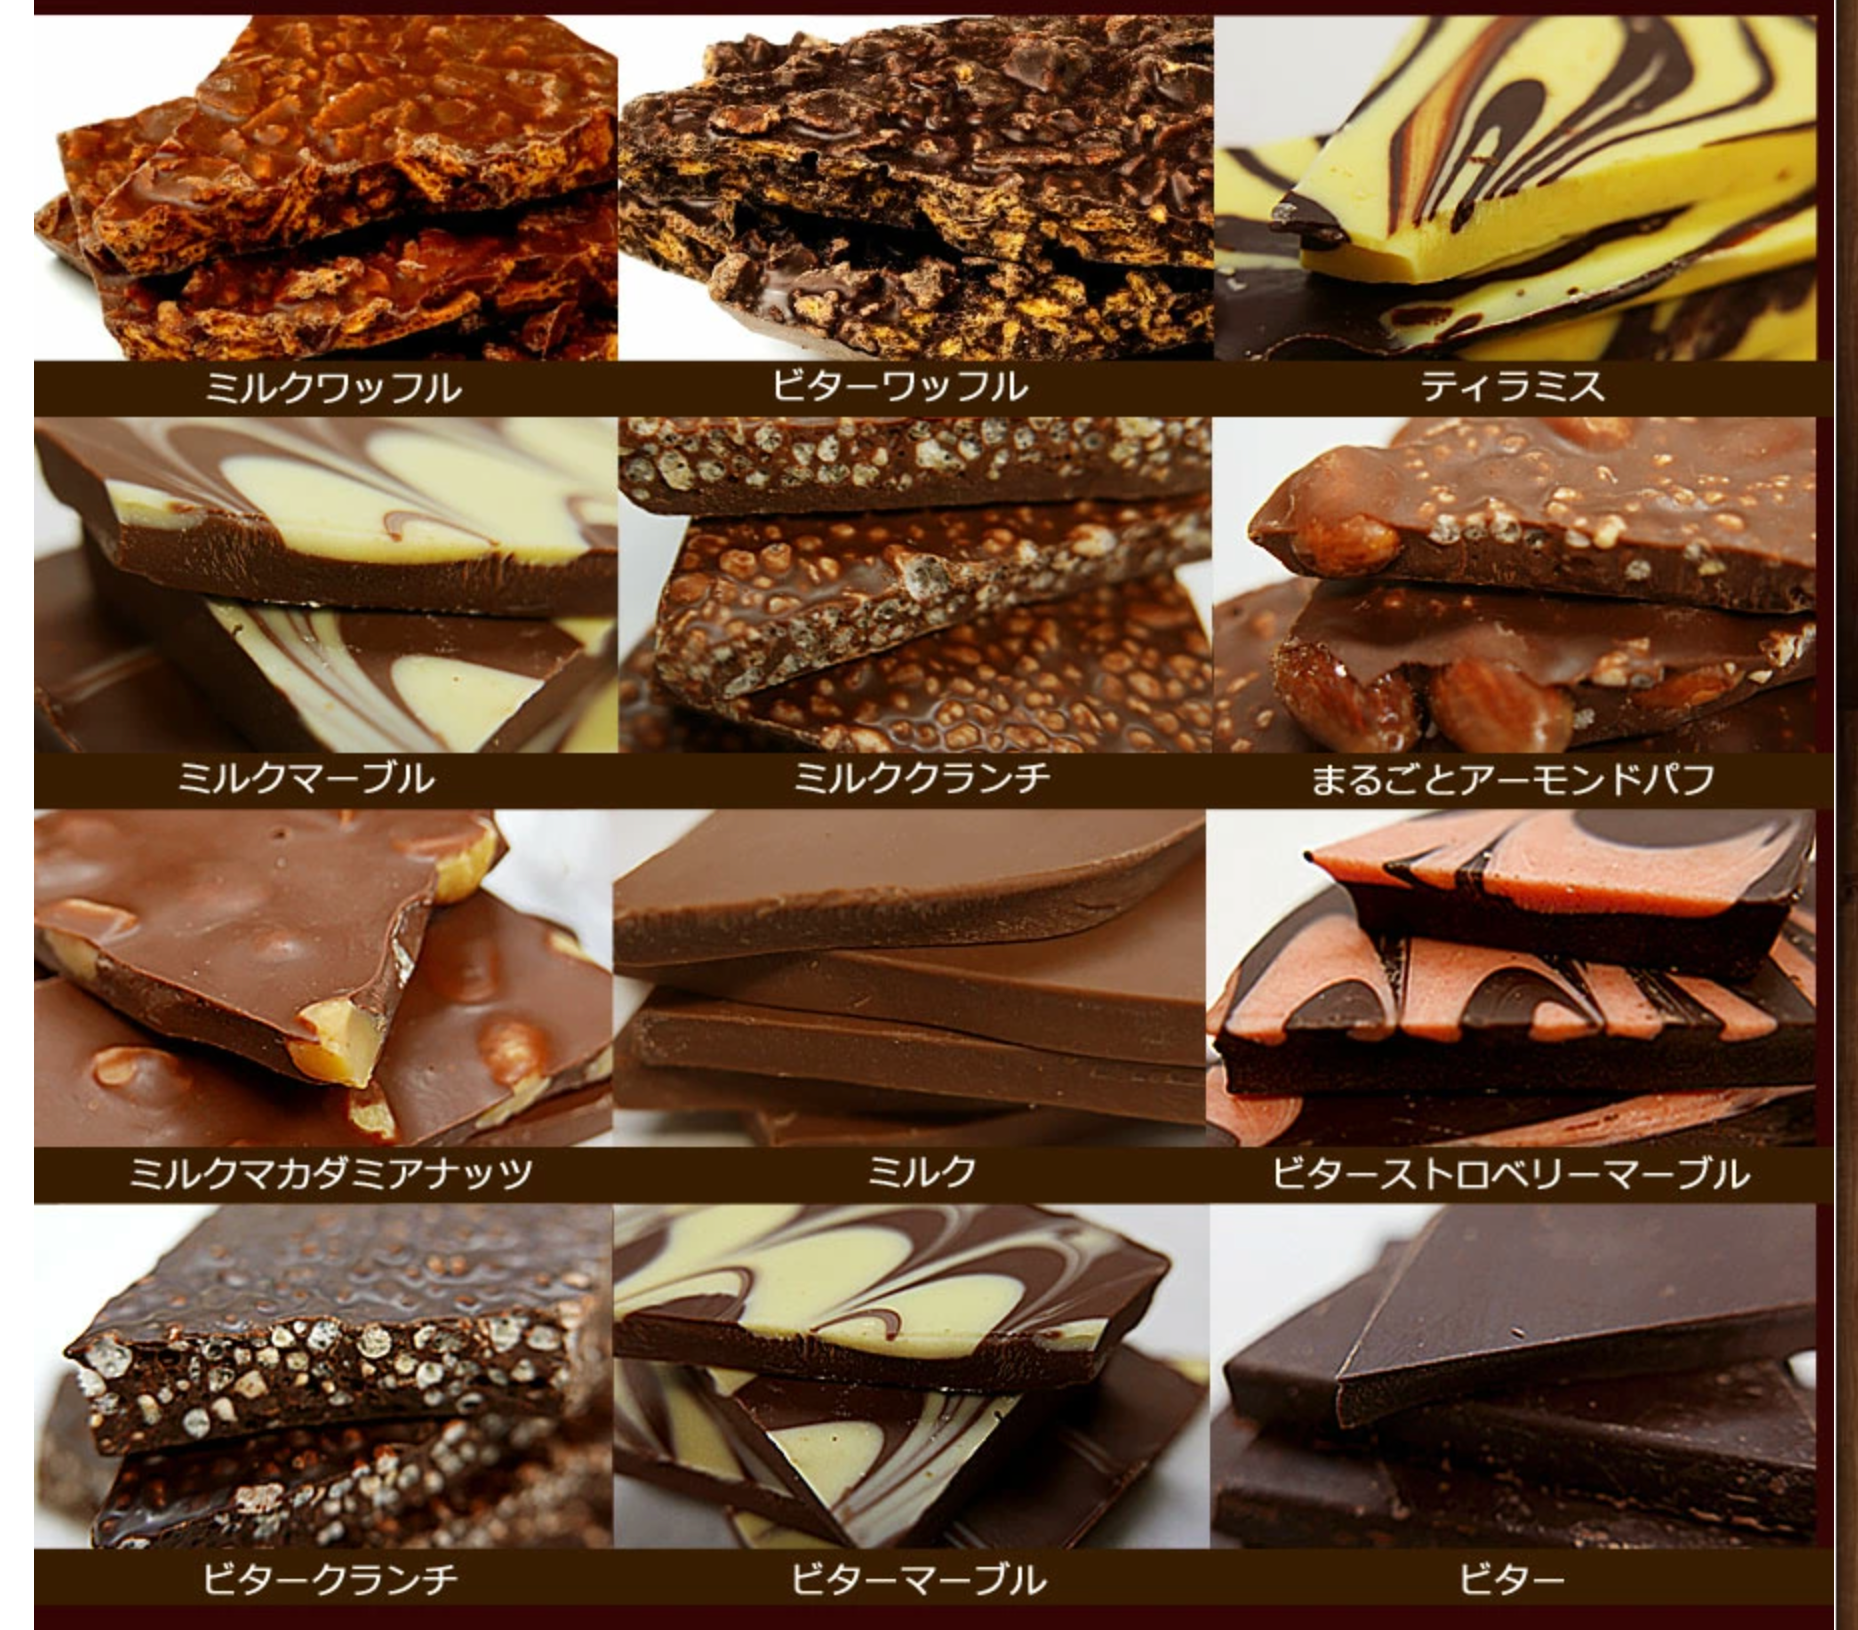 6送料無料【割れチョコミックス12種】-1kg-チュベ・ド・ショコラ-割れチョコ一覧-チュベ・ド・ショコラ